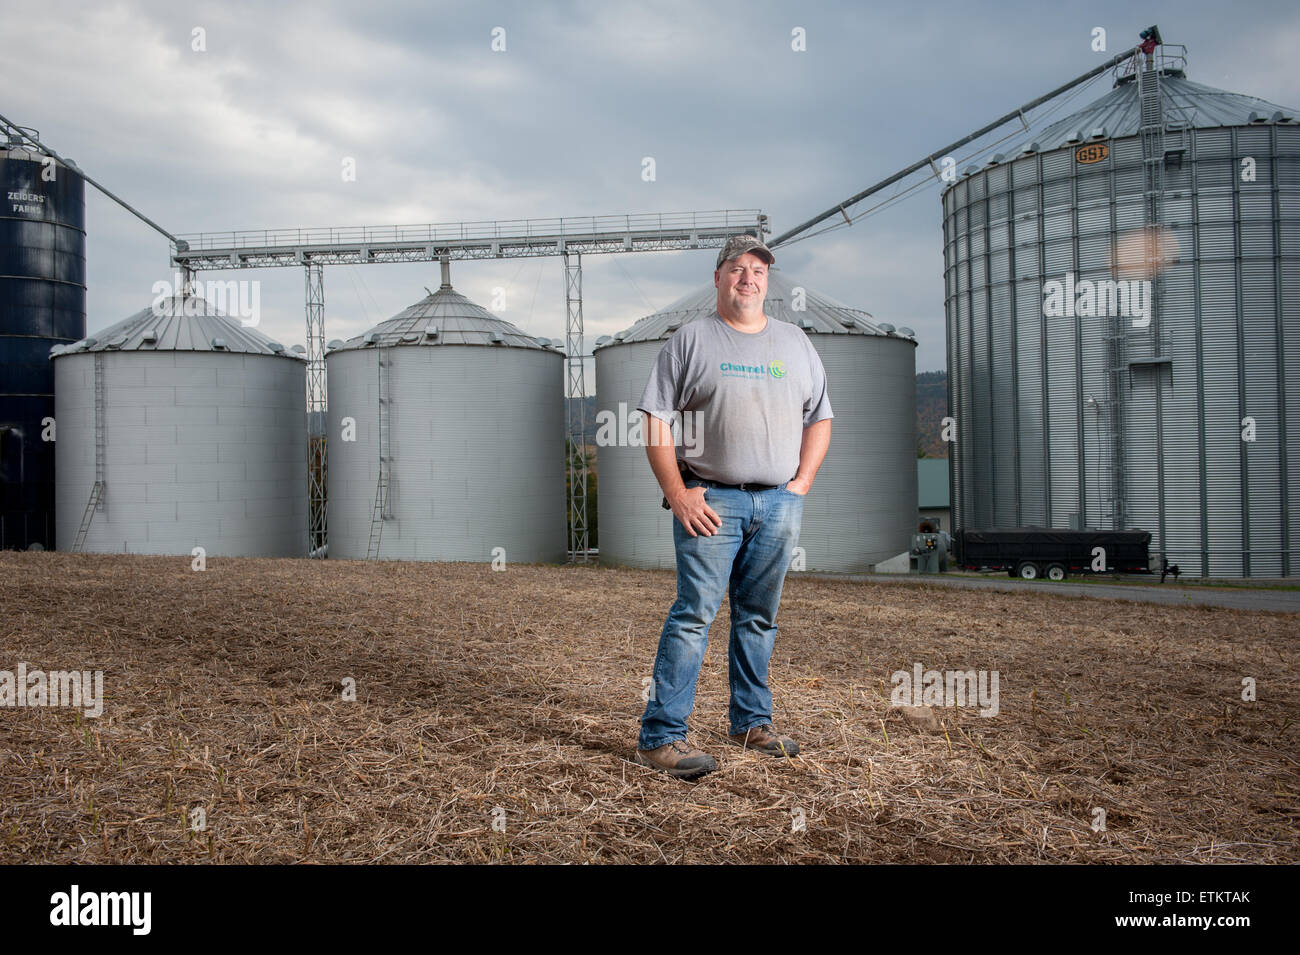 Farmer standing in front of steel grain silos in Dalmatia, Pennsylvania, USA Stock Photo